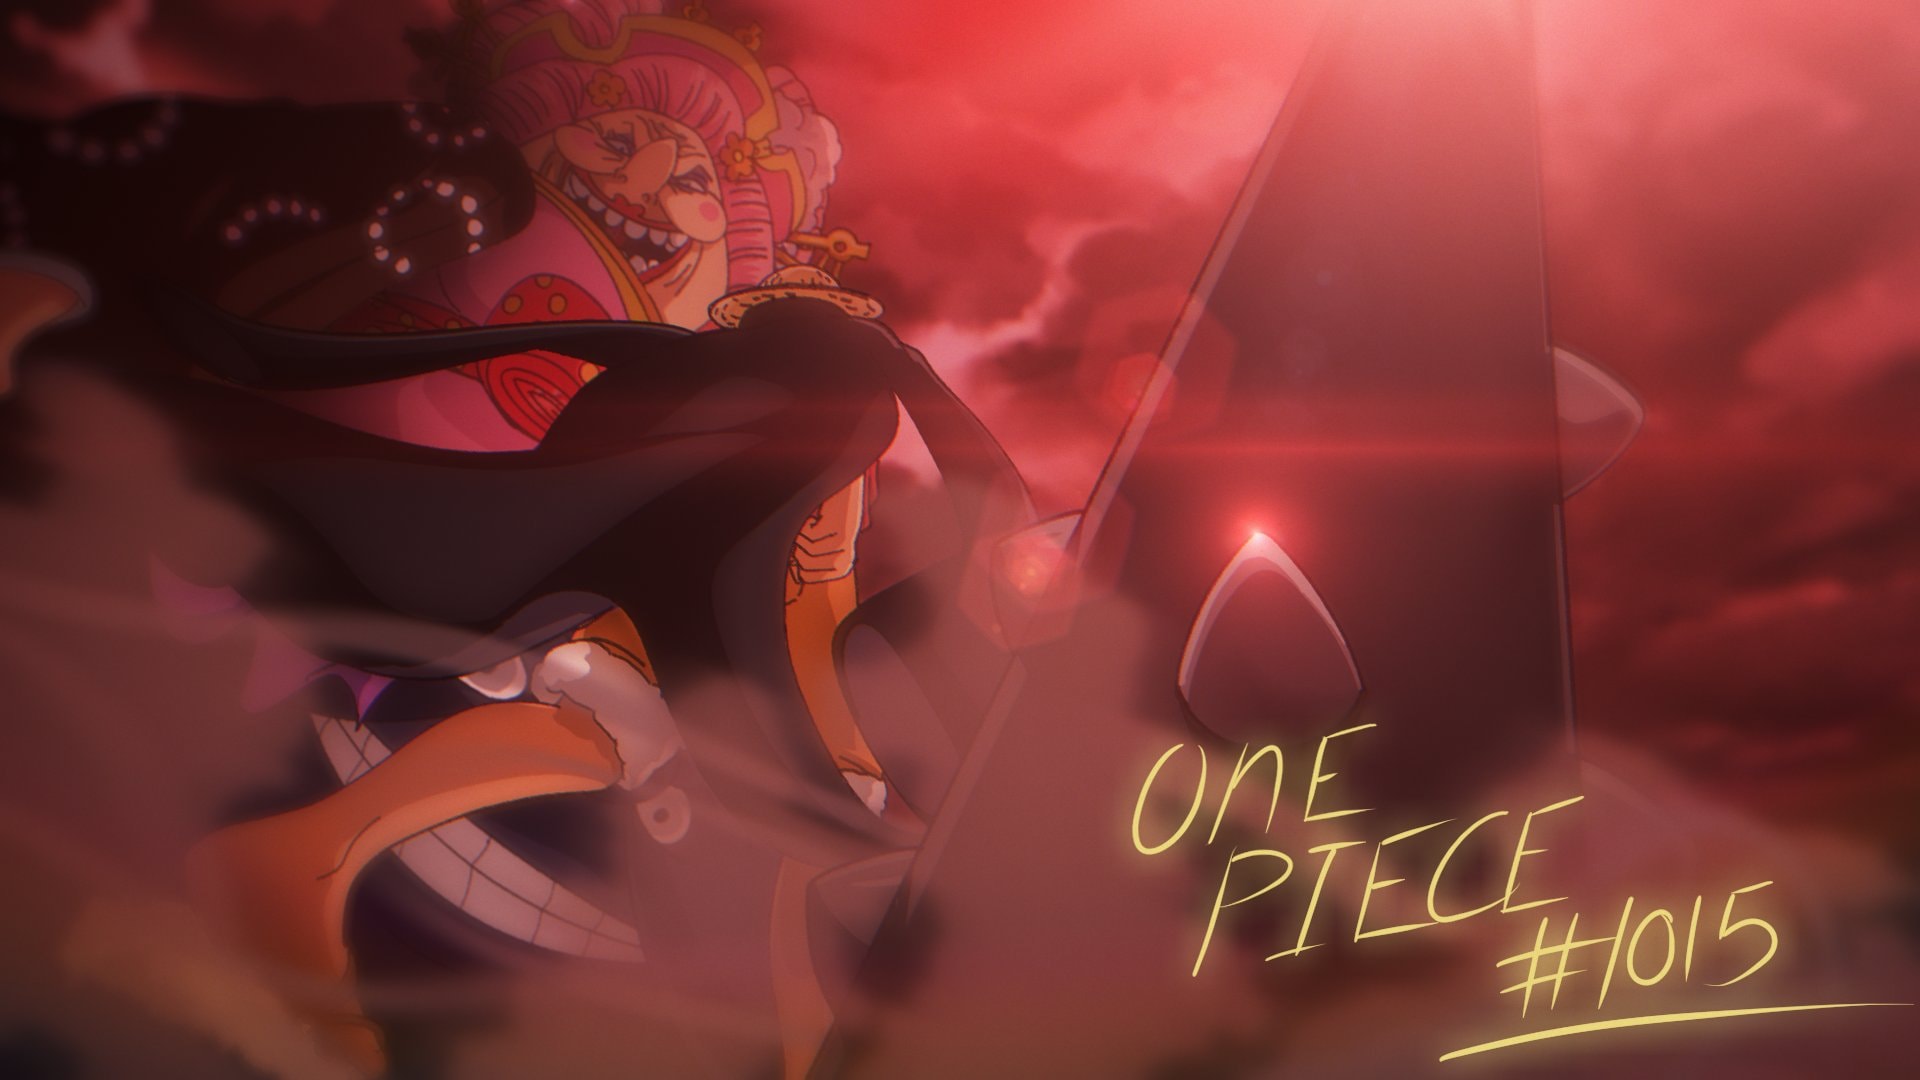 One Piece 1015: One Piece 1015 đang chờ đón bạn với những trận chiến đầy kịch tính và đầy bất ngờ. Bạn không thể bỏ qua cơ hội để tìm hiểu về những diễn biến mới nhất của câu chuyện và những nhân vật đầy sức mạnh. Hãy cùng đón xem và cảm nhận từng cảm xúc mà One Piece 1015 mang lại cho bạn!